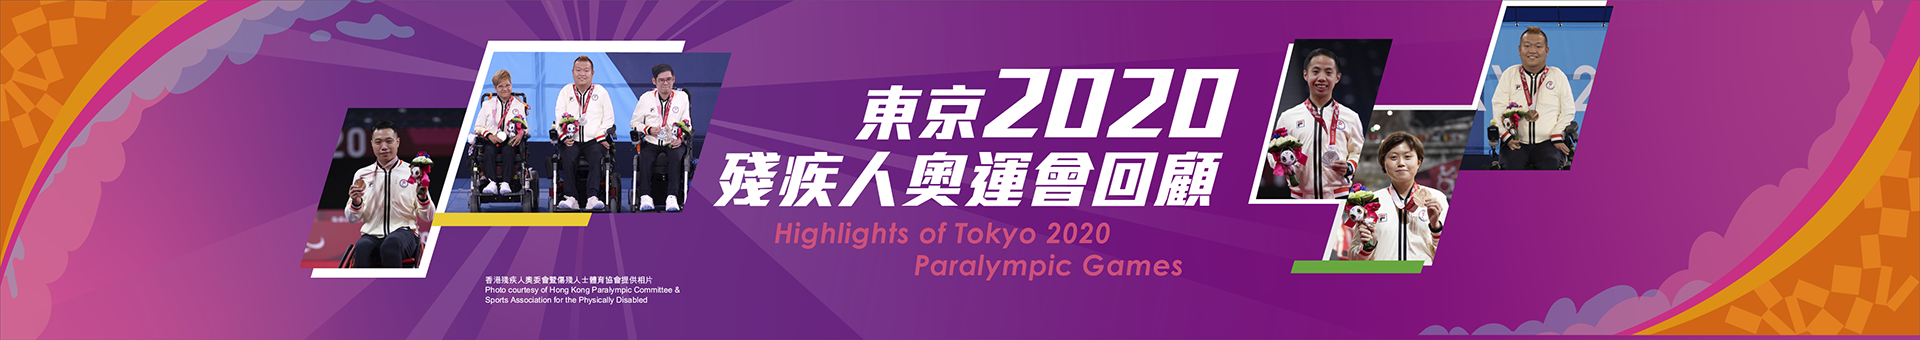 东京2020残疾人奥运会回顾